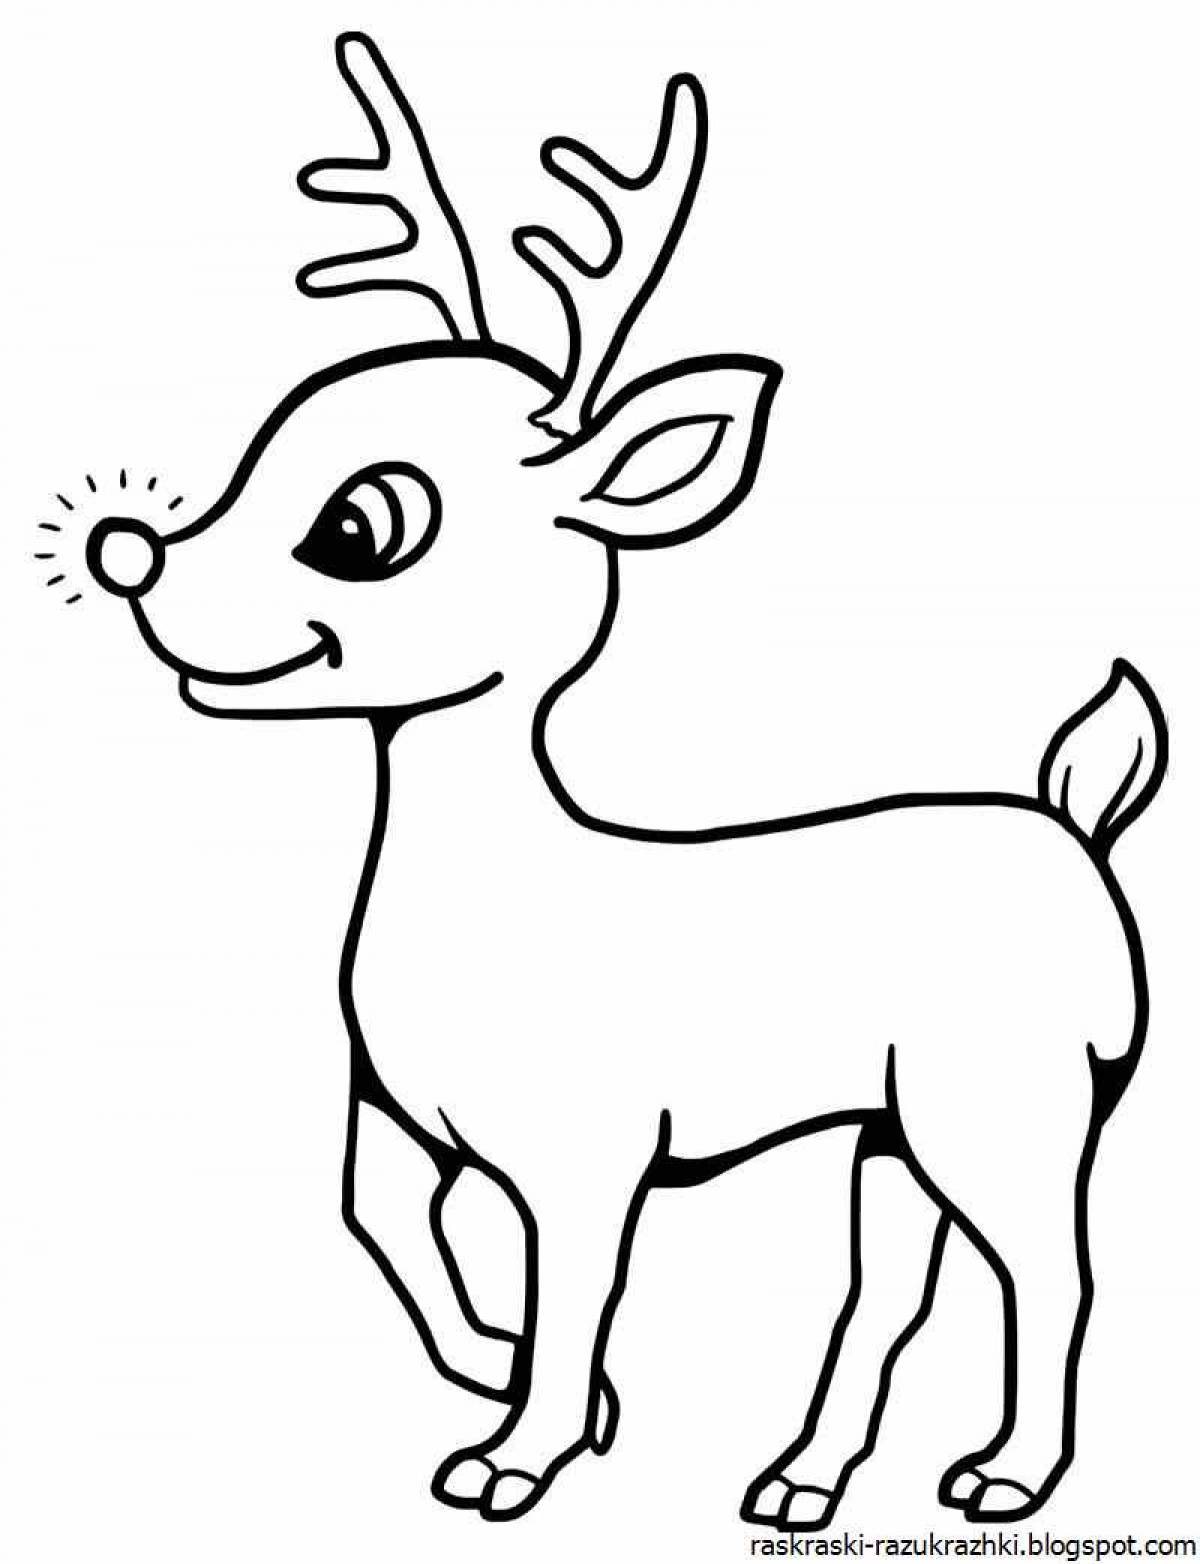 Fancy deer coloring book for kids 6-7 years old